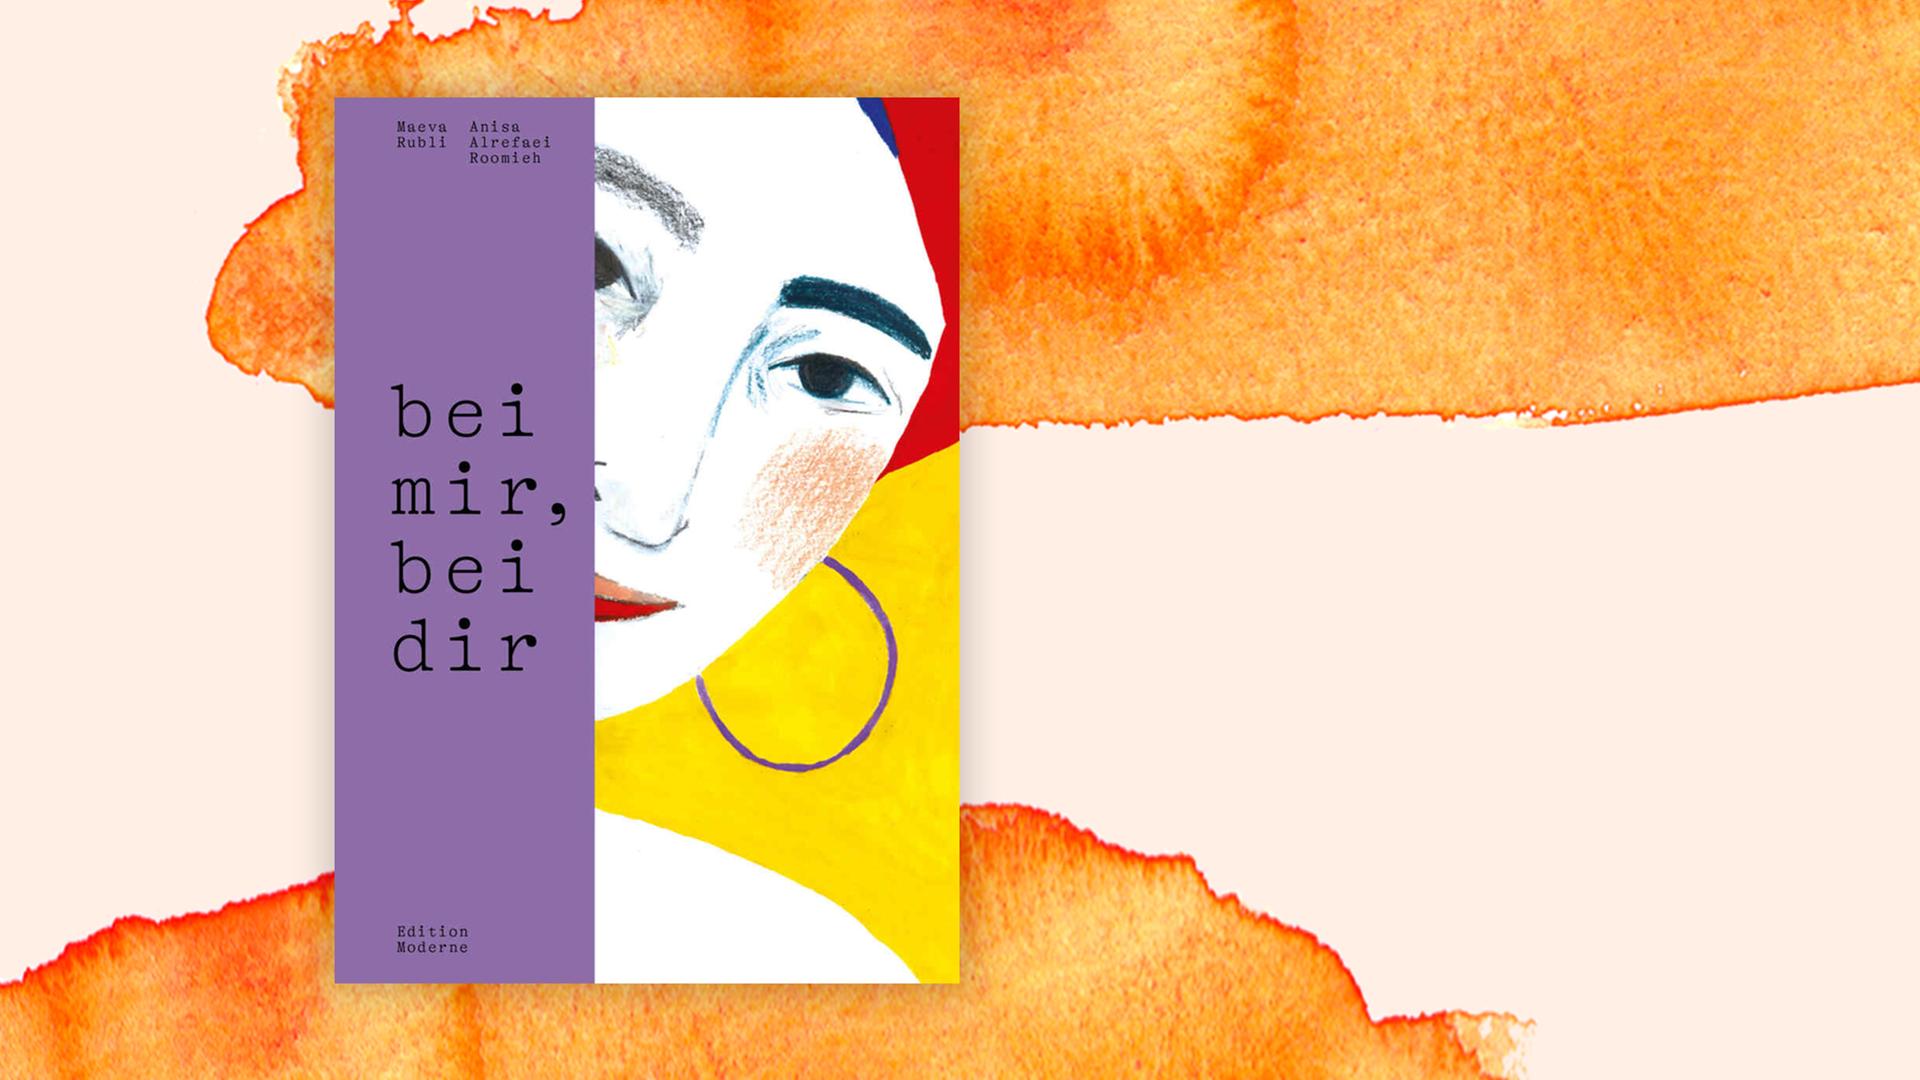 Buchcover "bei mir, bei dir" von Maeva Rubli und Anisa Alrefaei Roomieh vor einem grafischen Hintergrund